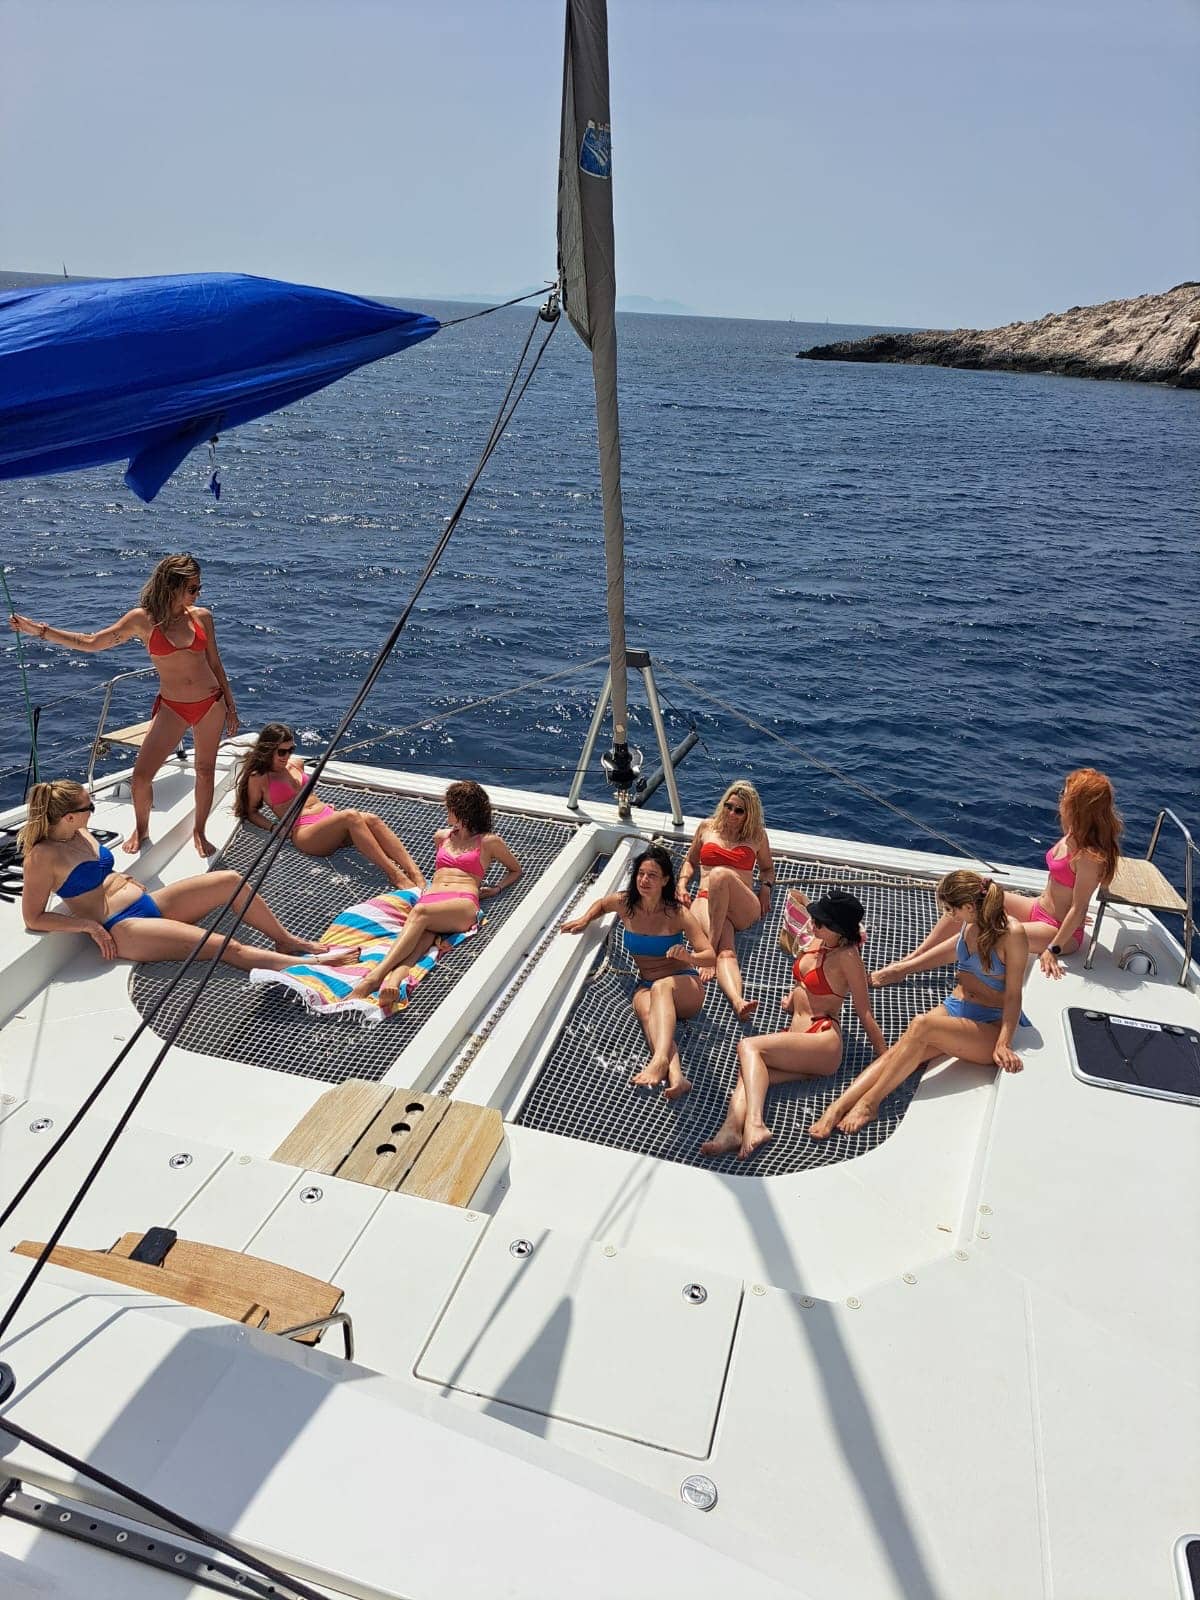 Eine Gruppe von Menschen genießt einen sonnigen Tag auf dem Deck eines Katamarans, umgeben von klarem, blauem Wasser, wobei einige sitzen und andere stehen.